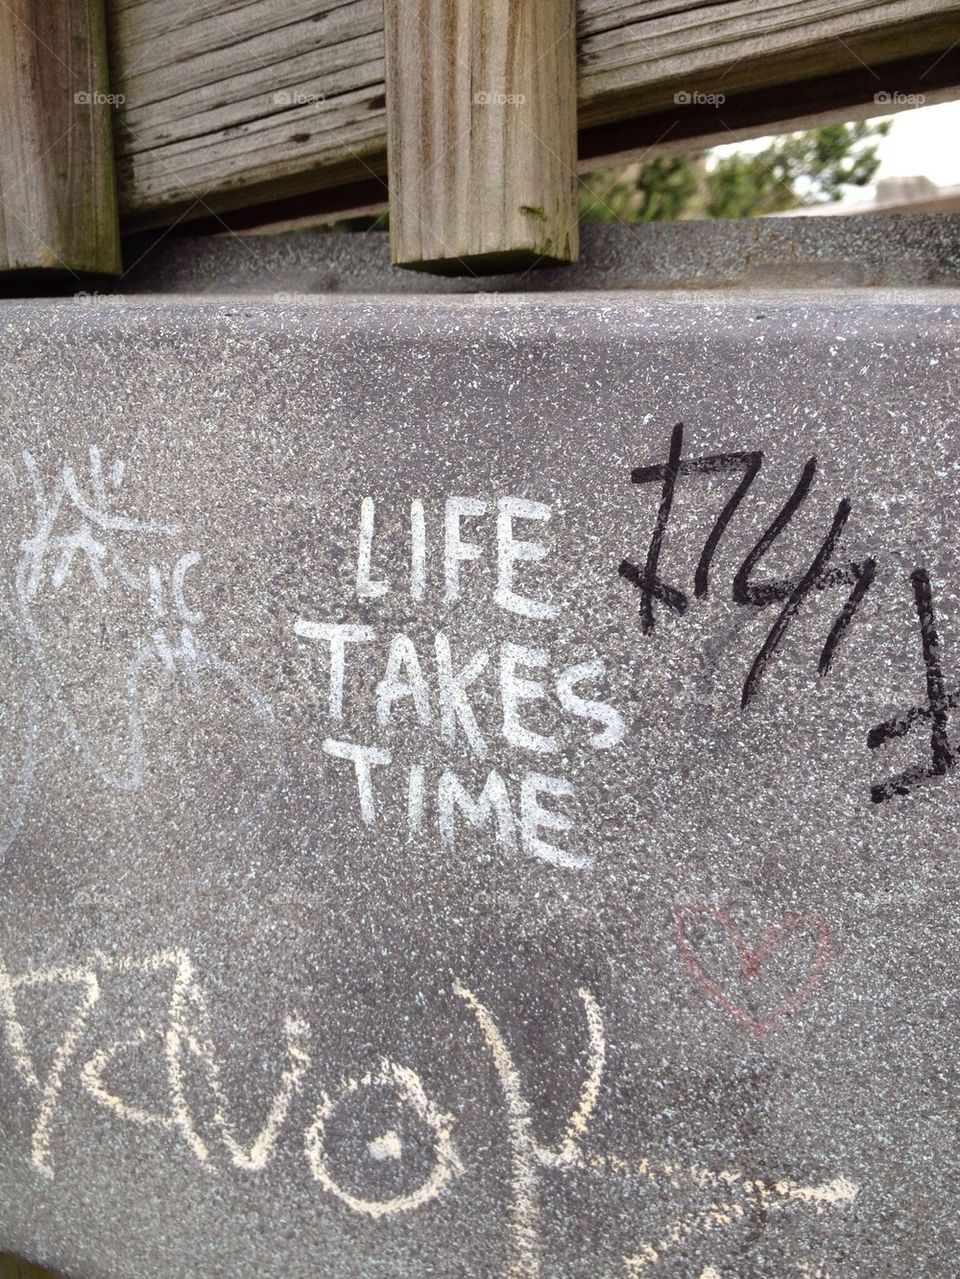 Life takes time